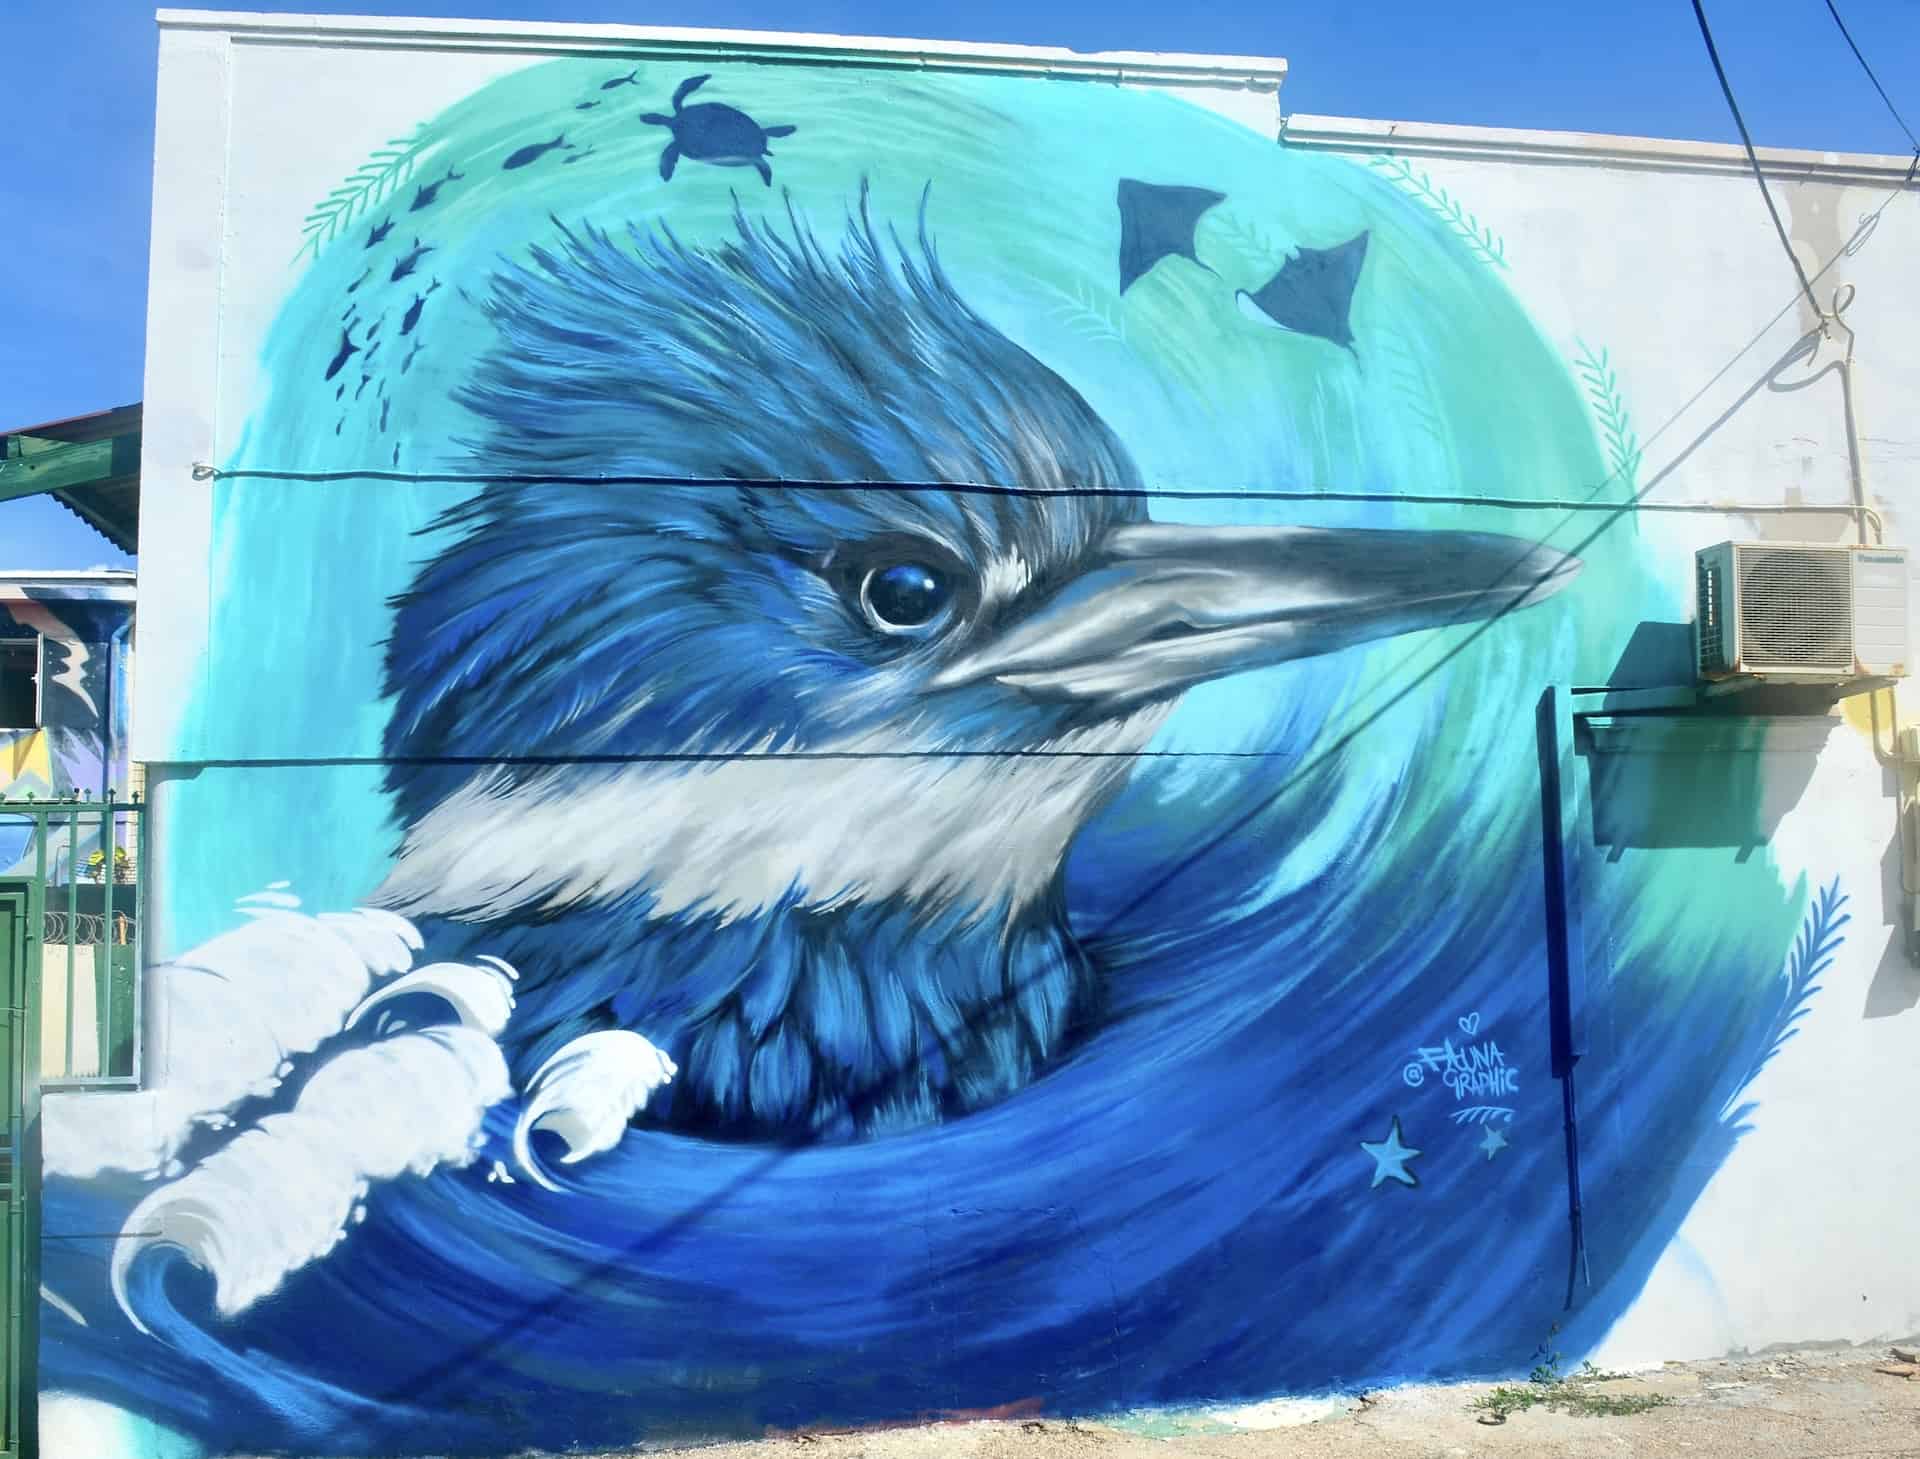 Bluebird mural